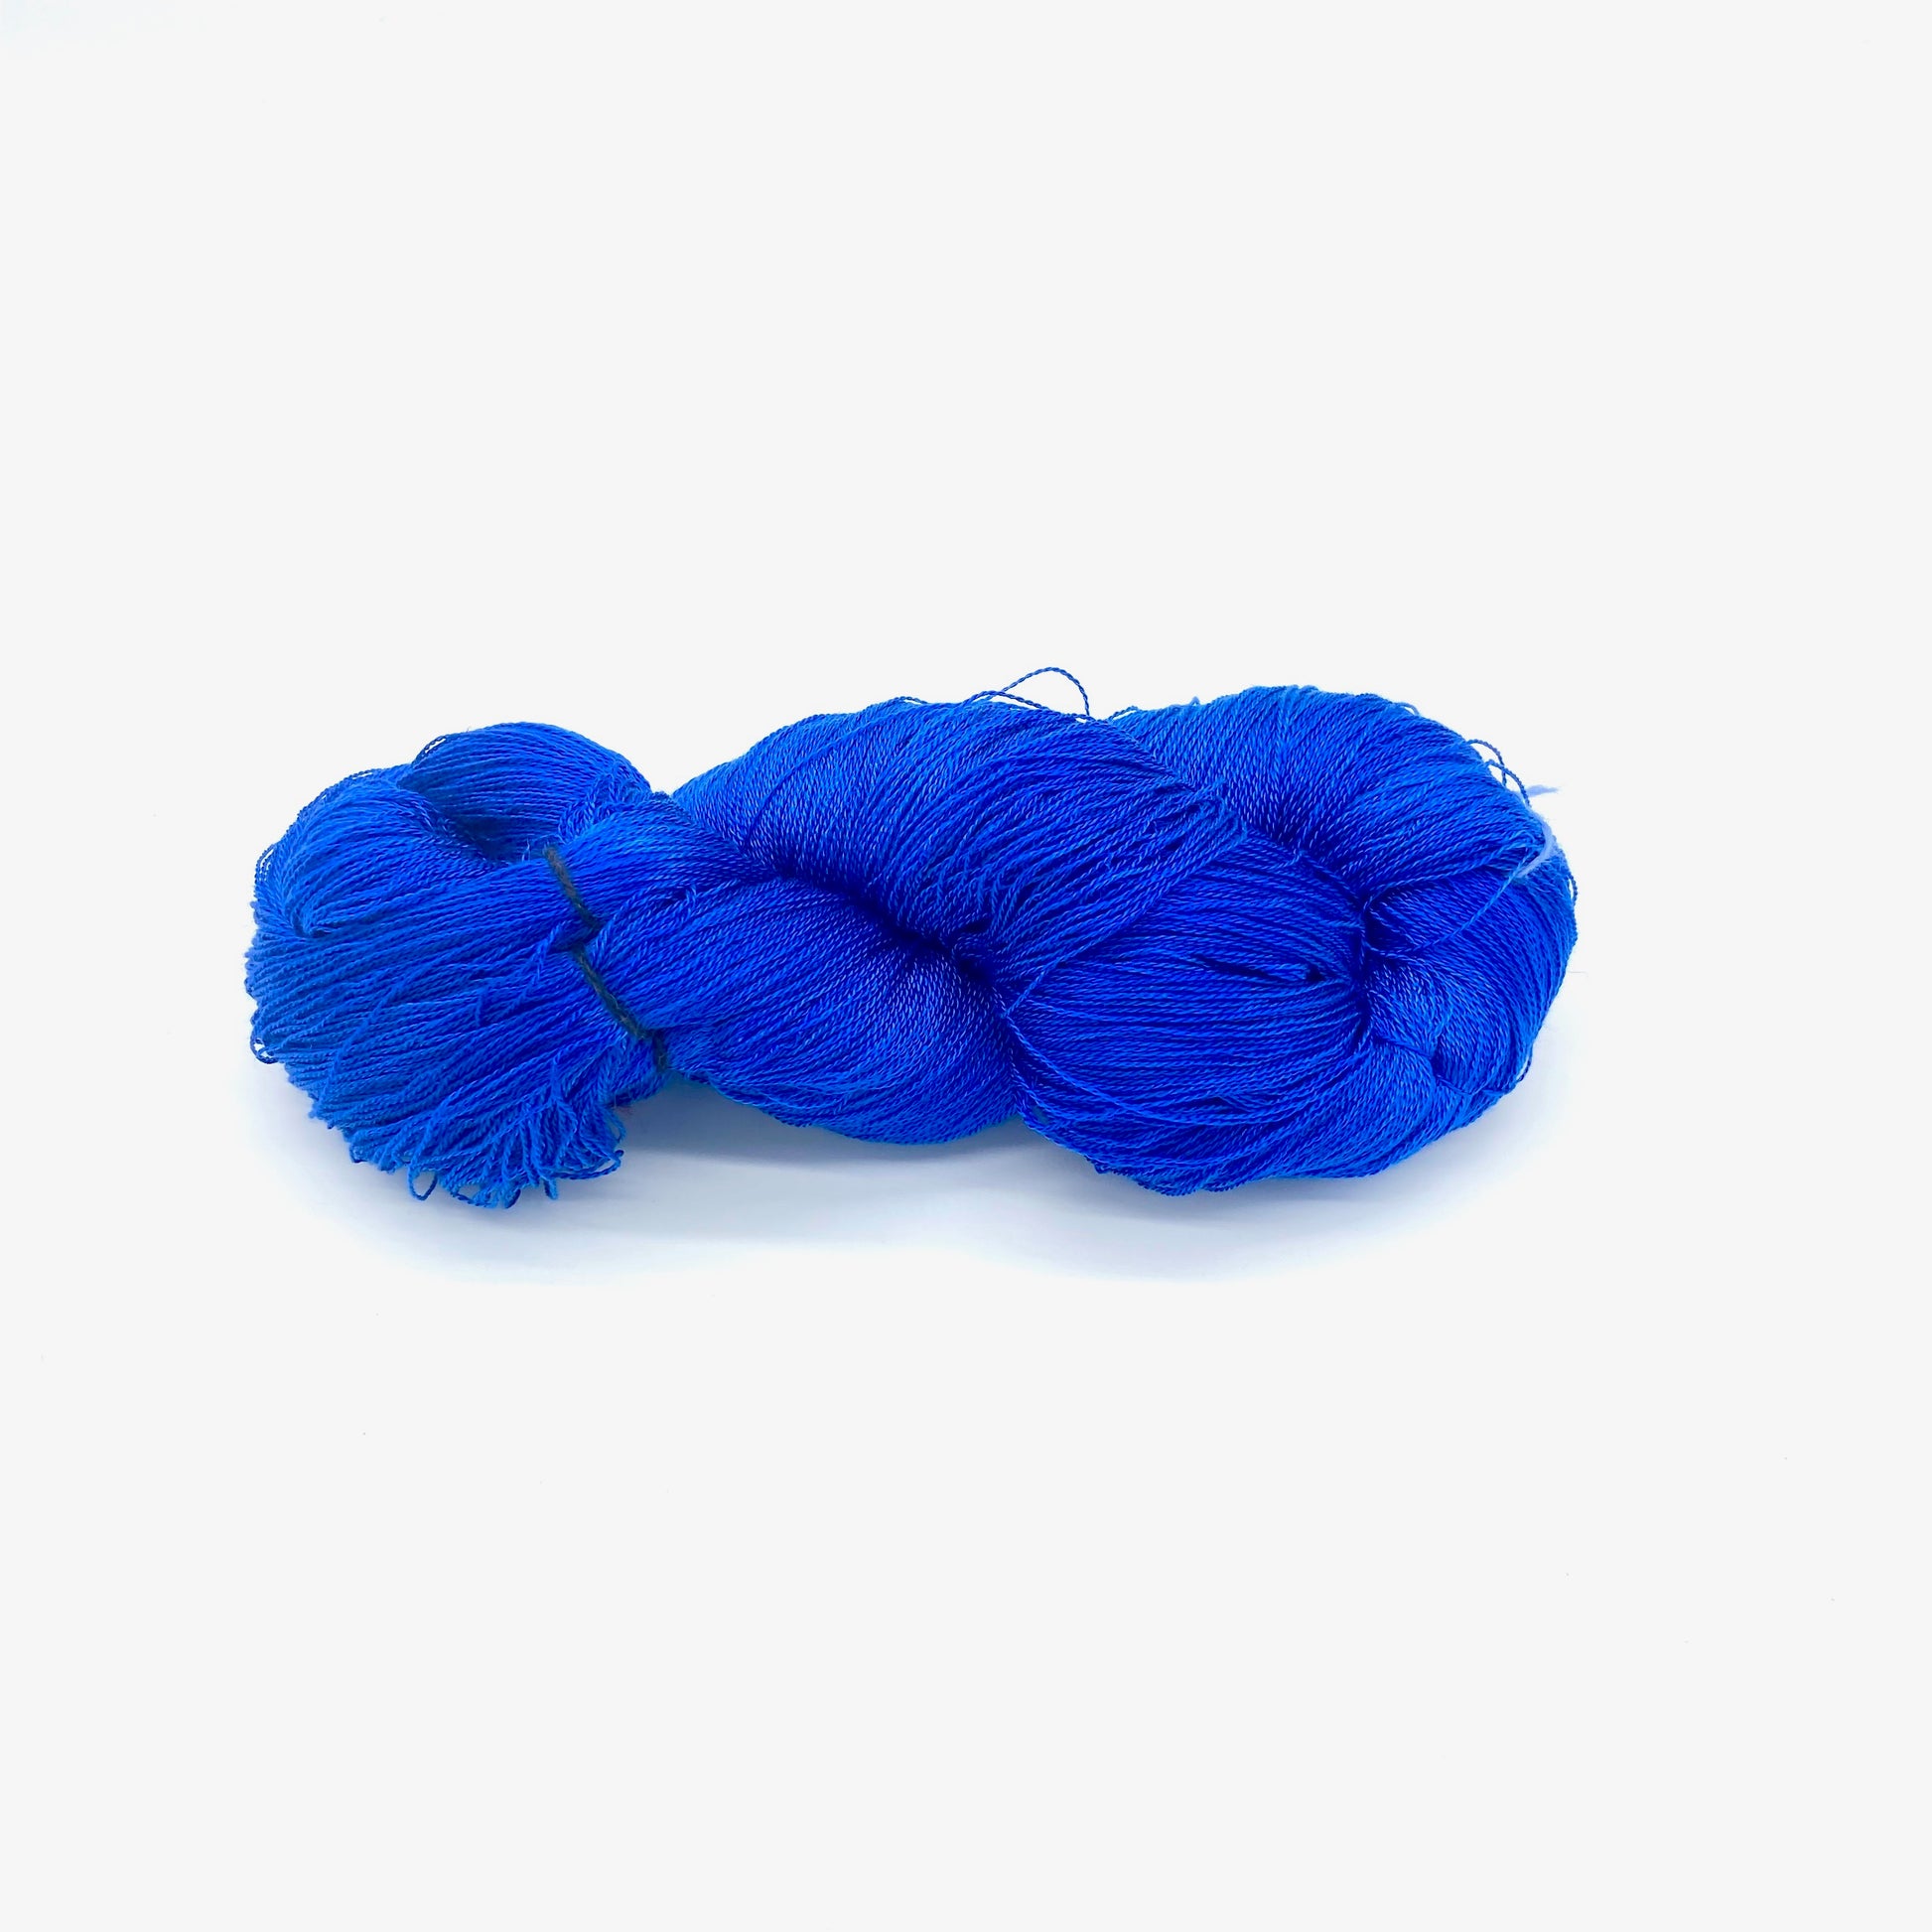 Semi Solid Tencel 8/2 Skeins - Sydney Sogol, Hand dyed Yarn, copy-of-semi-solid-tencel-10-2-skeins, eco-friendly yarn, Hand dyed tencel yarn, hand dyed yarn, hand painted yarn, tencel yarn